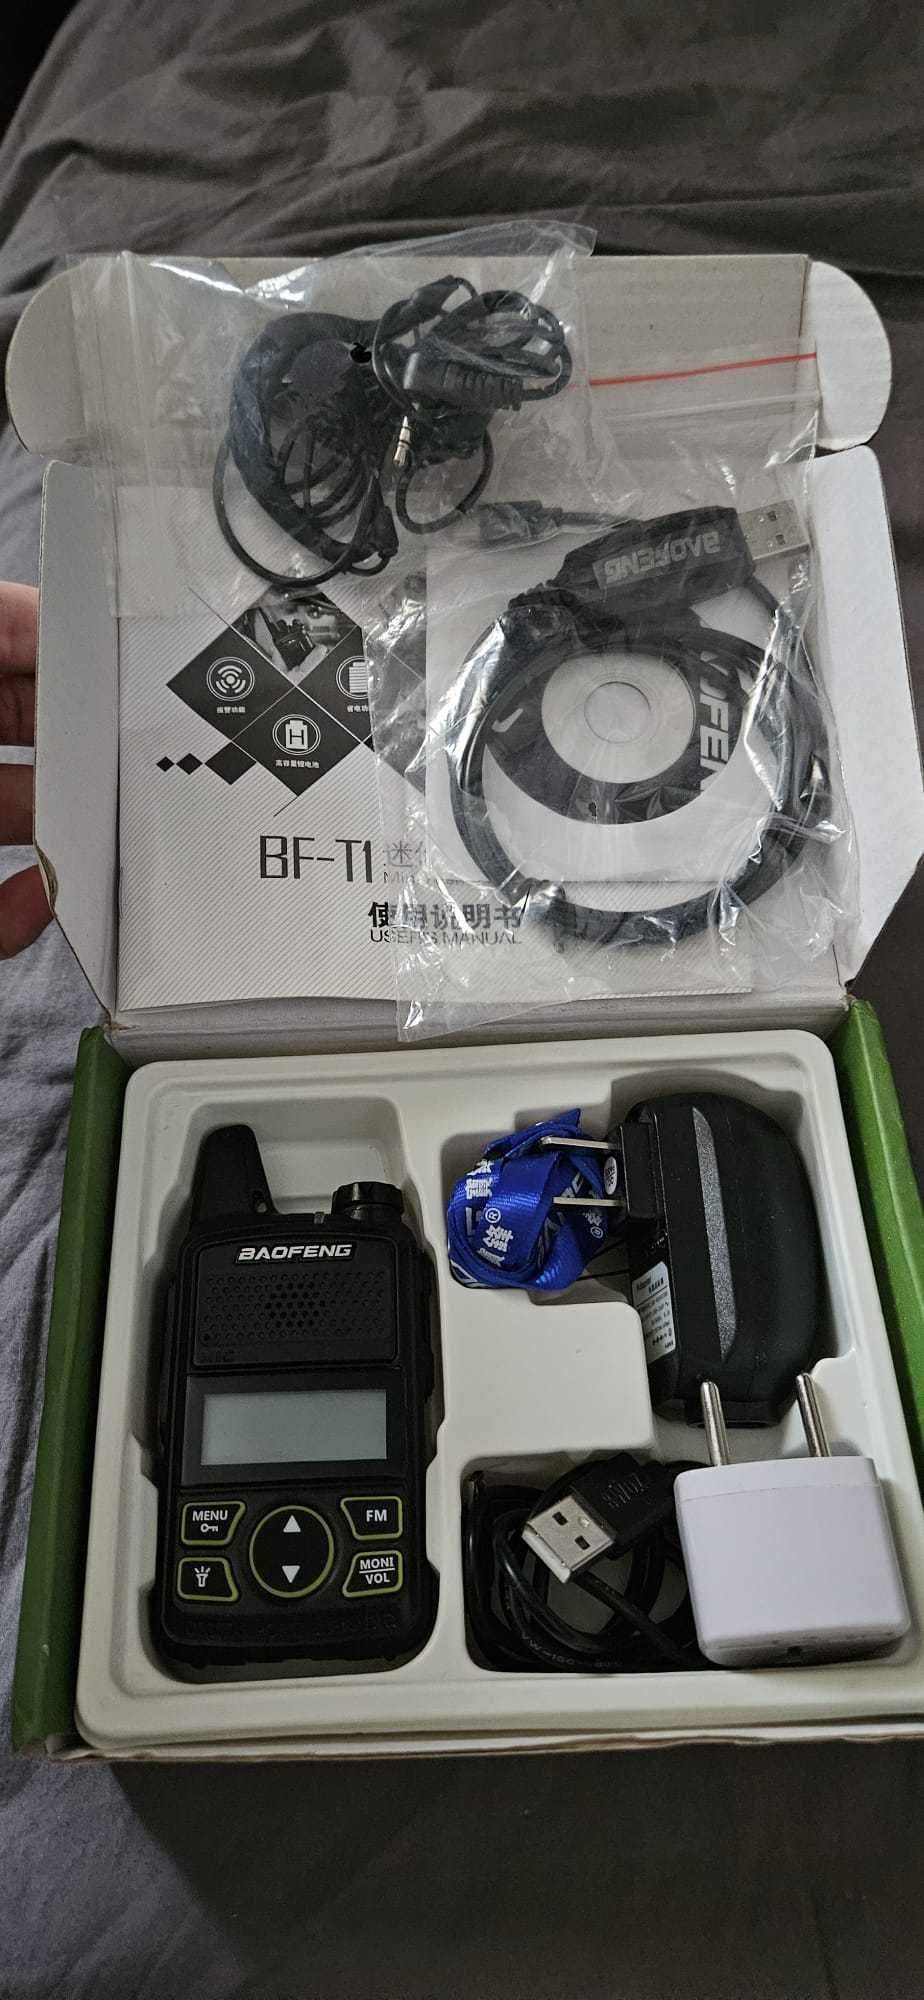 Statie emisie Baofeng BF-T1 walkie talkie